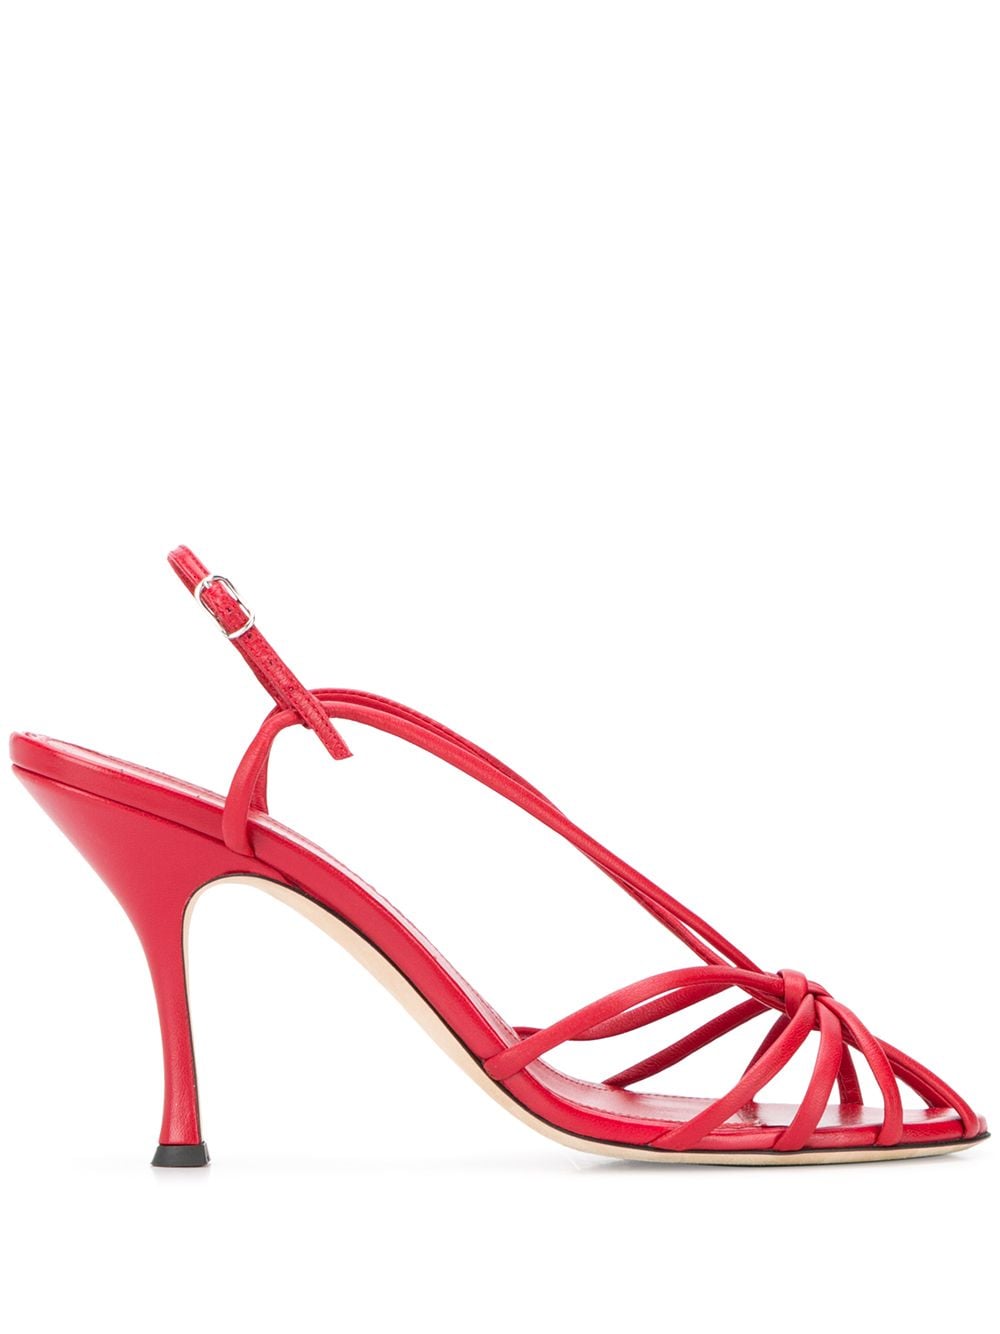 Victoria Beckham Brigitte Strappy Sandals In Red